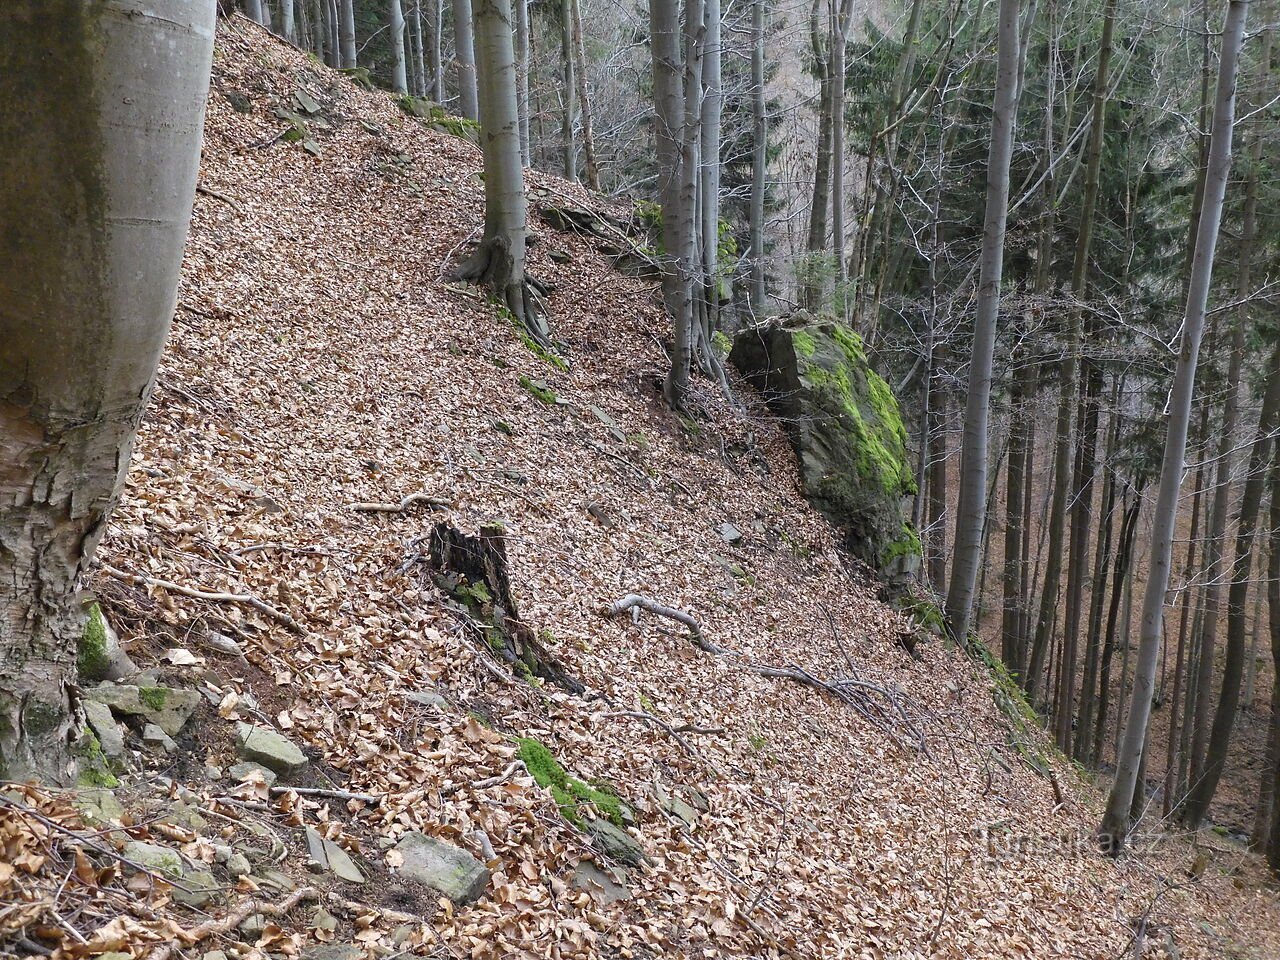 Interessante rots- en steenformaties ten noorden van de bergkam Sulov - Mosty u Jablunkova, deel 4.